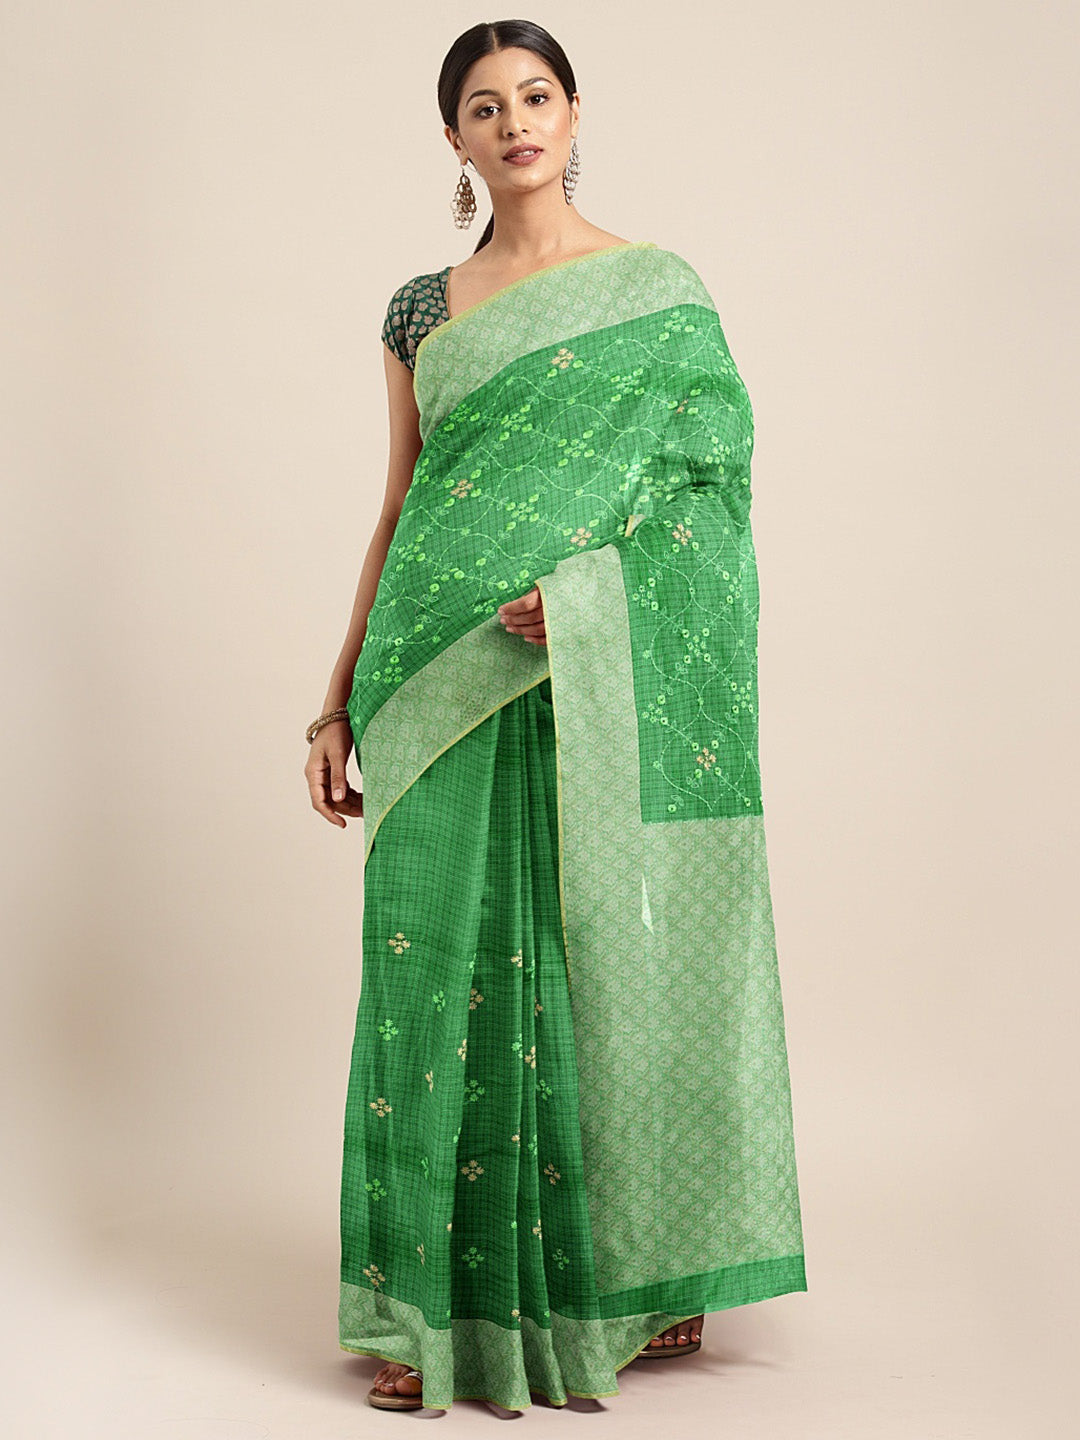 Neeru'S Green Color, Kora Fabric Saree